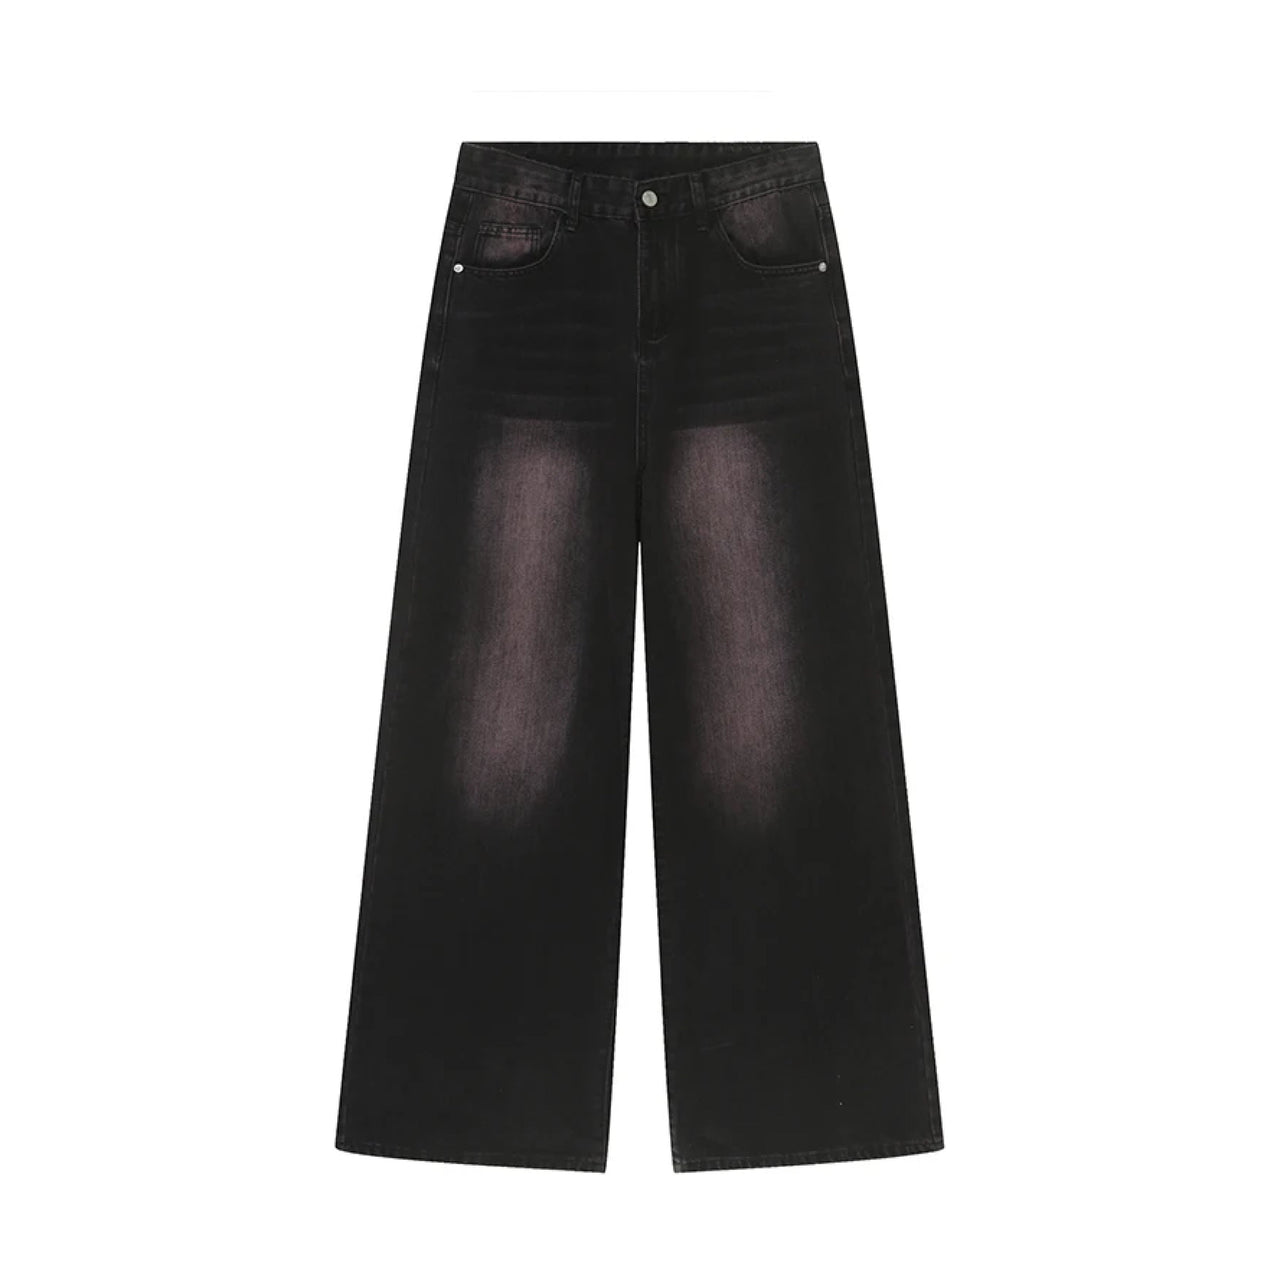 Black/Pink Fade Baggy Jeans-streetwear-techwear